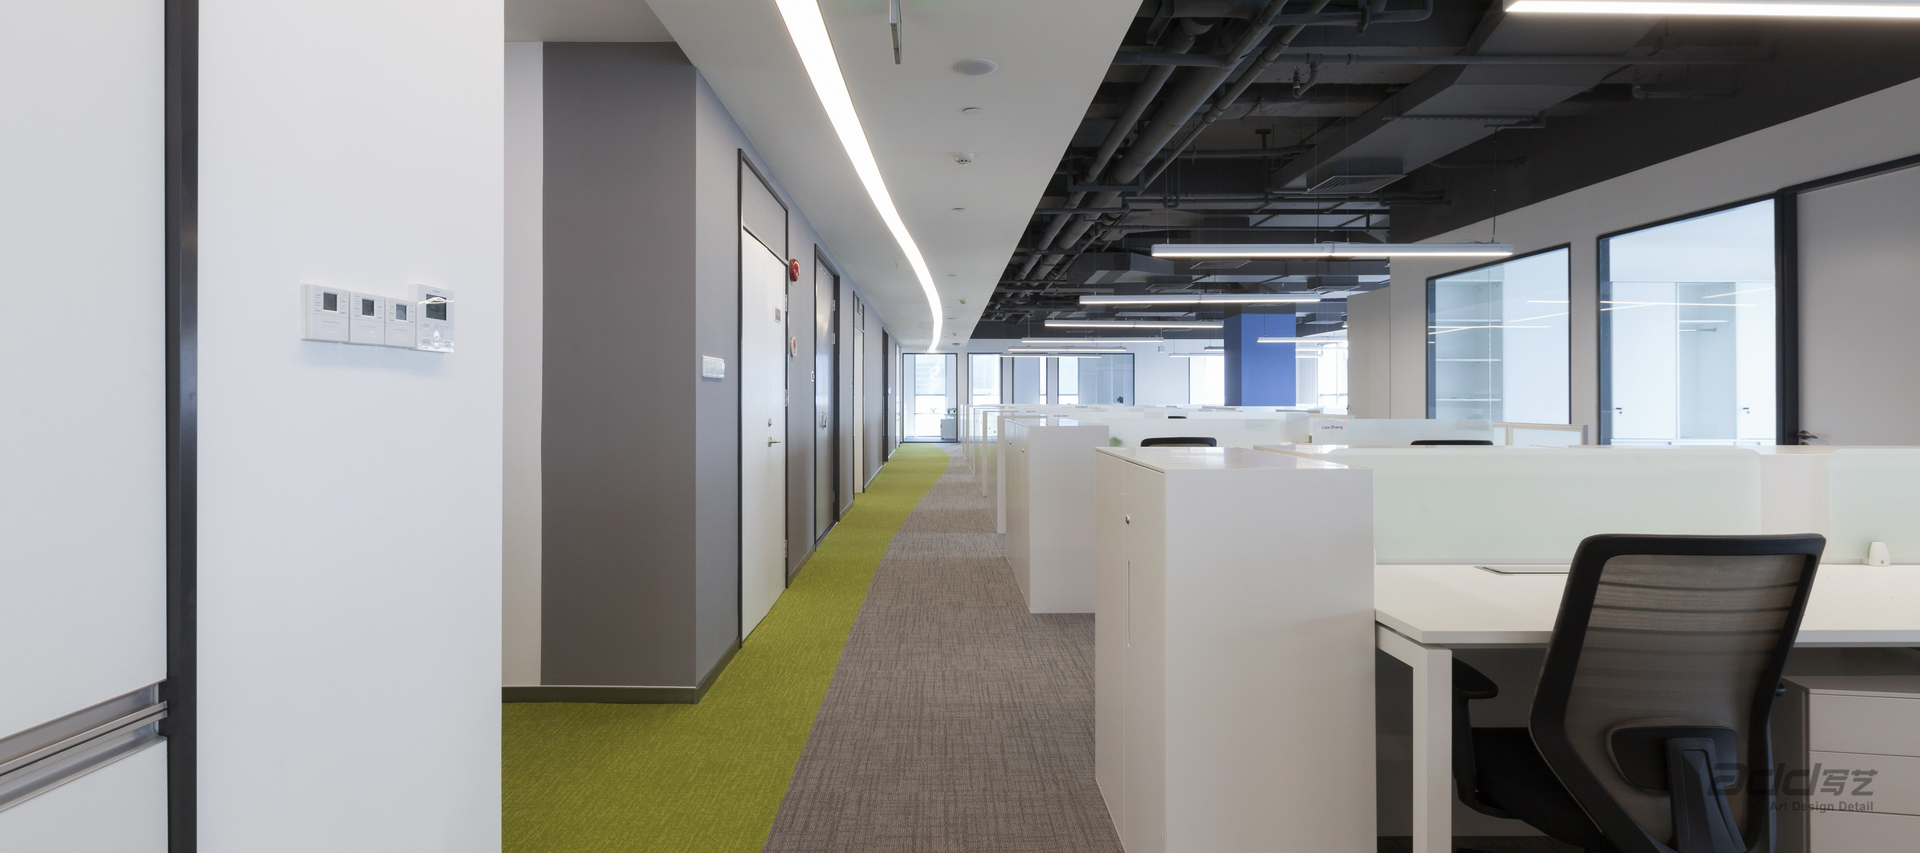 羅賓遜全球物流辦公室裝修-走廊-pc